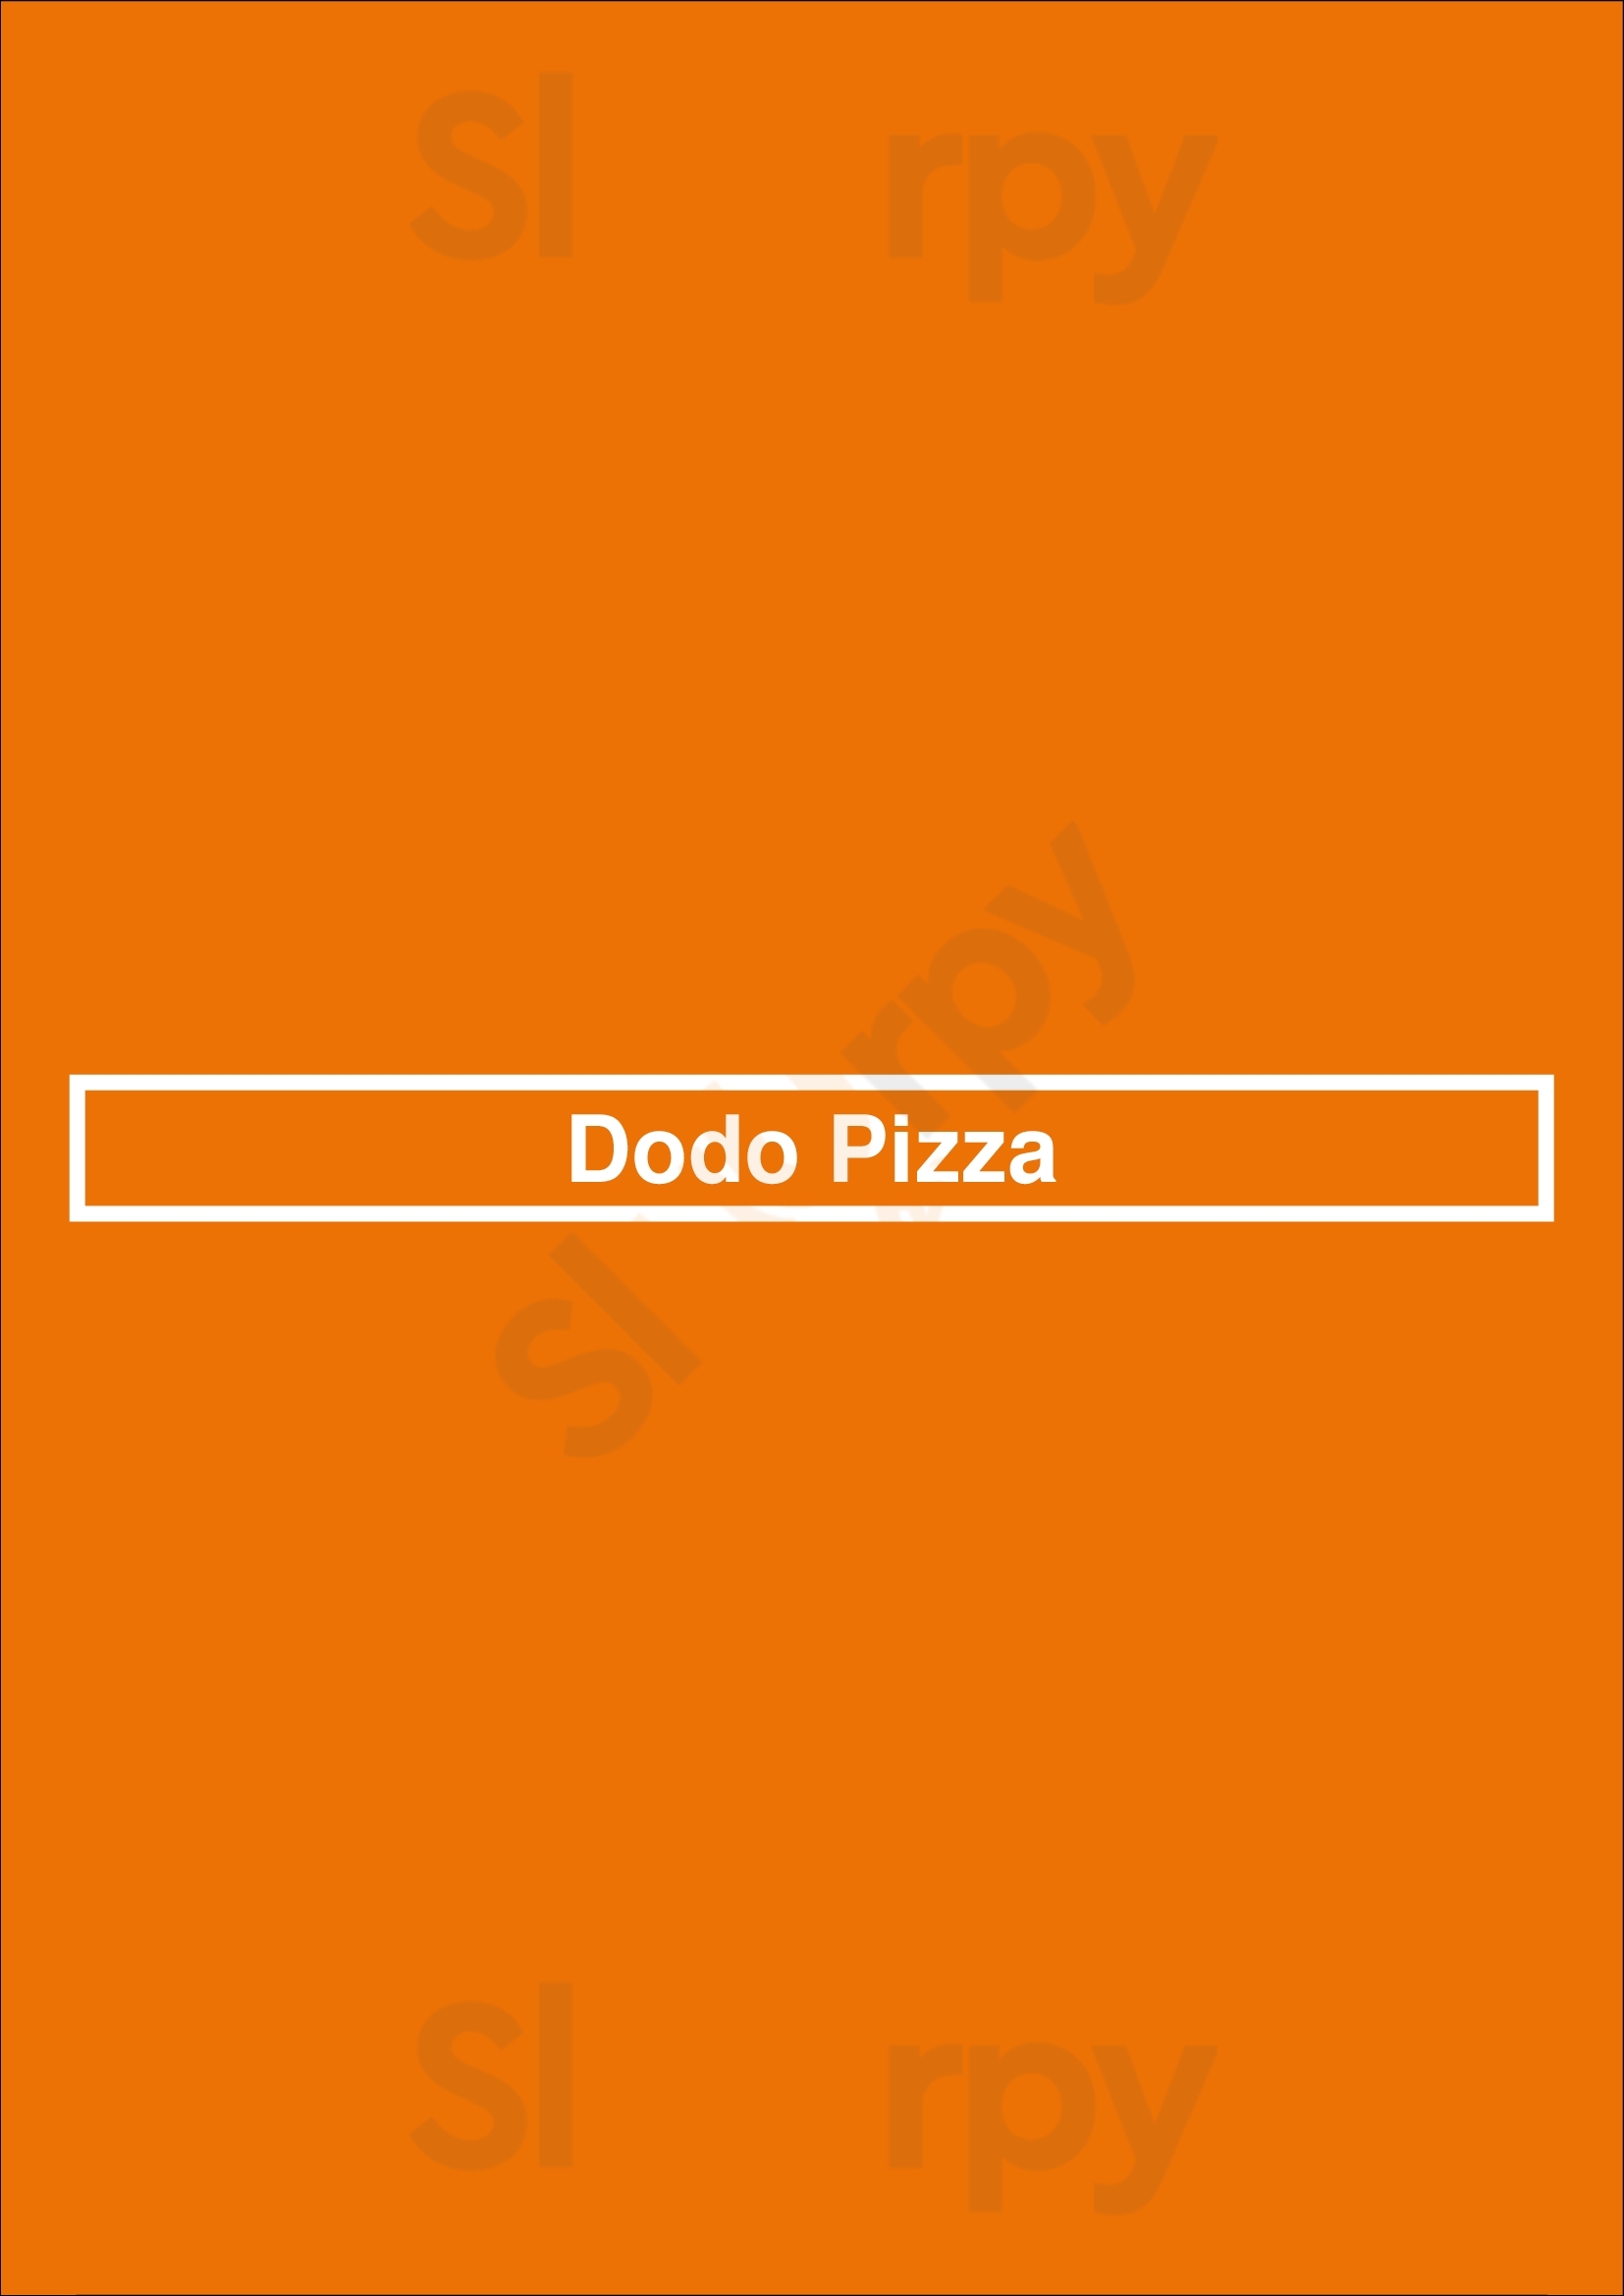 Dodo Pizza Walsall Menu - 1